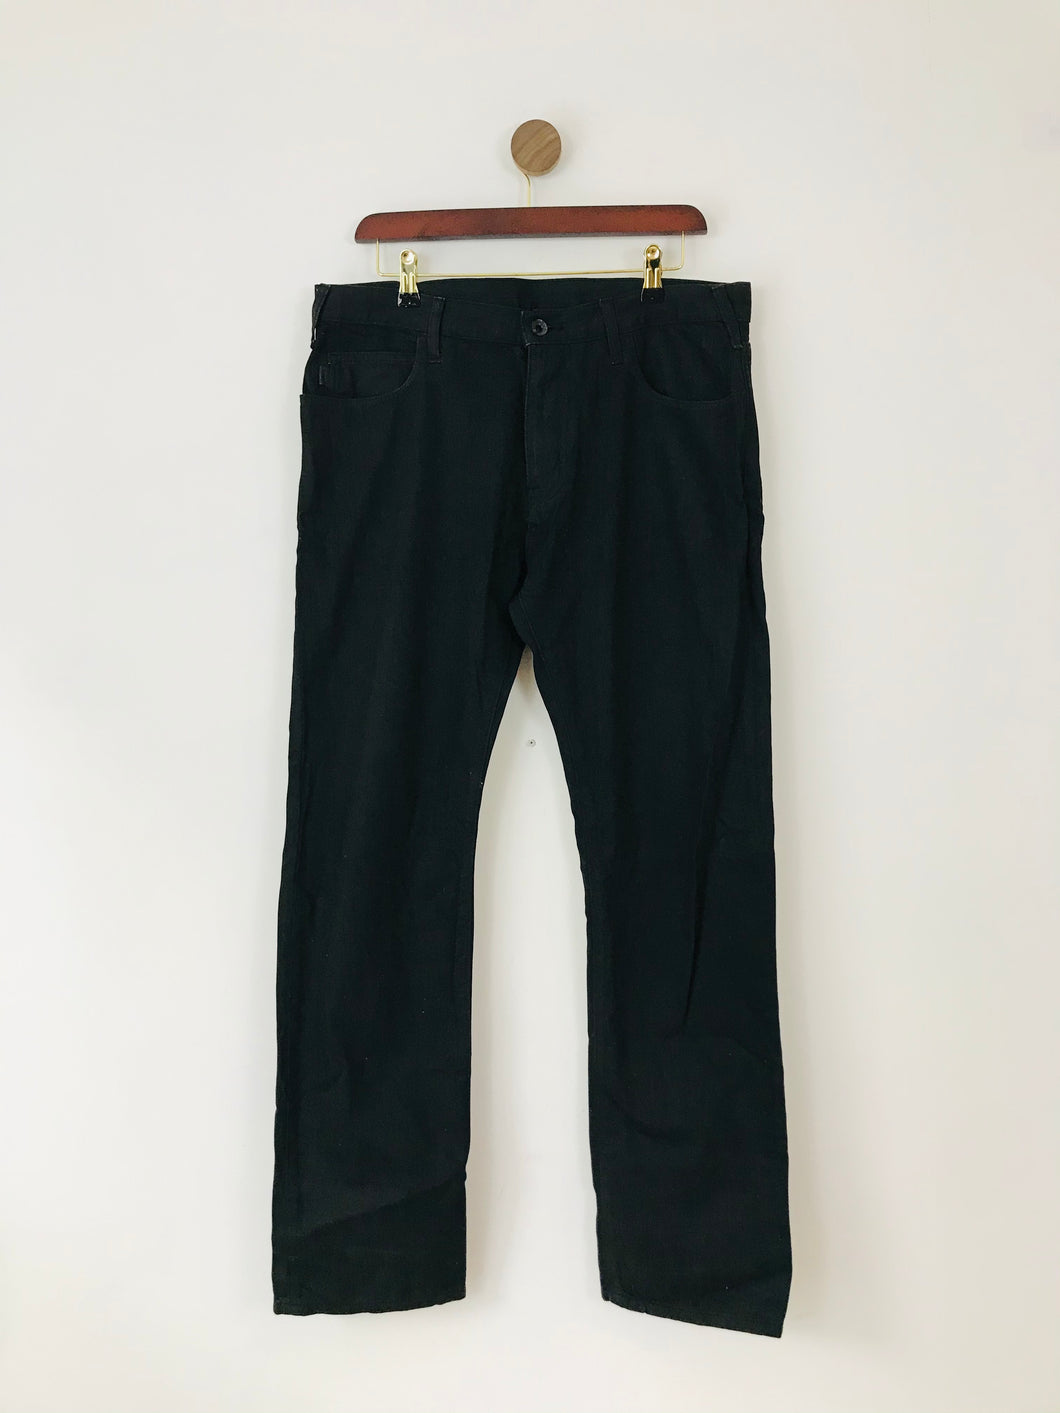 Armani Jeans Men’s Straight Leg Jeans | J45 34 | Black